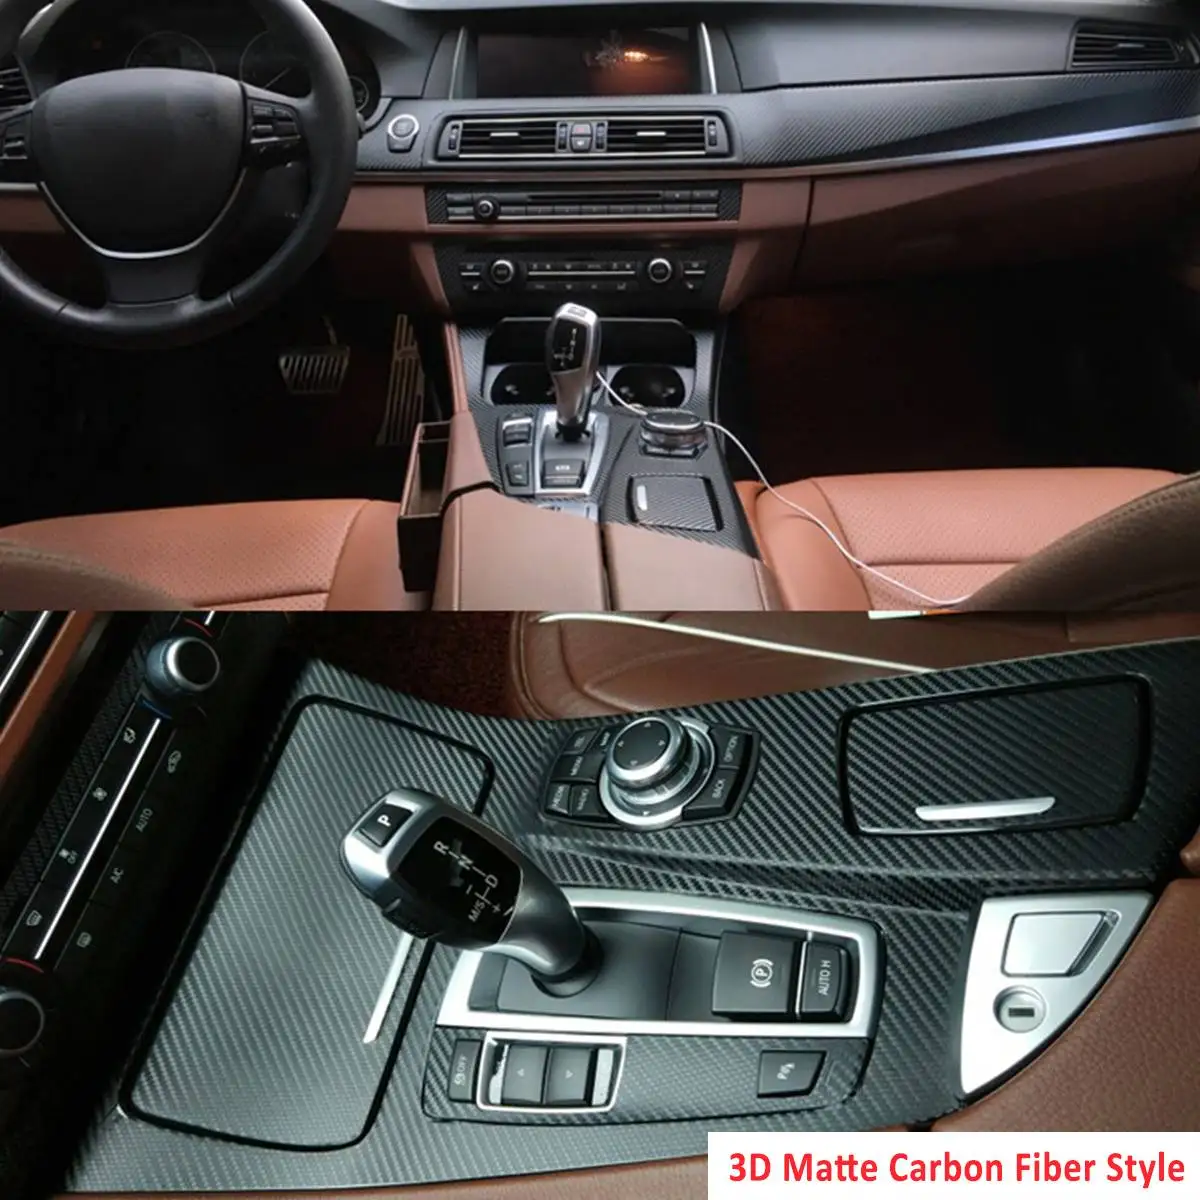 3D/5D коробка скоростей виниловая лента-наклейка Глянцевая/матовый из углеродного волокна наклейка для BMW F10 F18 5 серии 2011- LHD - Название цвета: 3D Matte